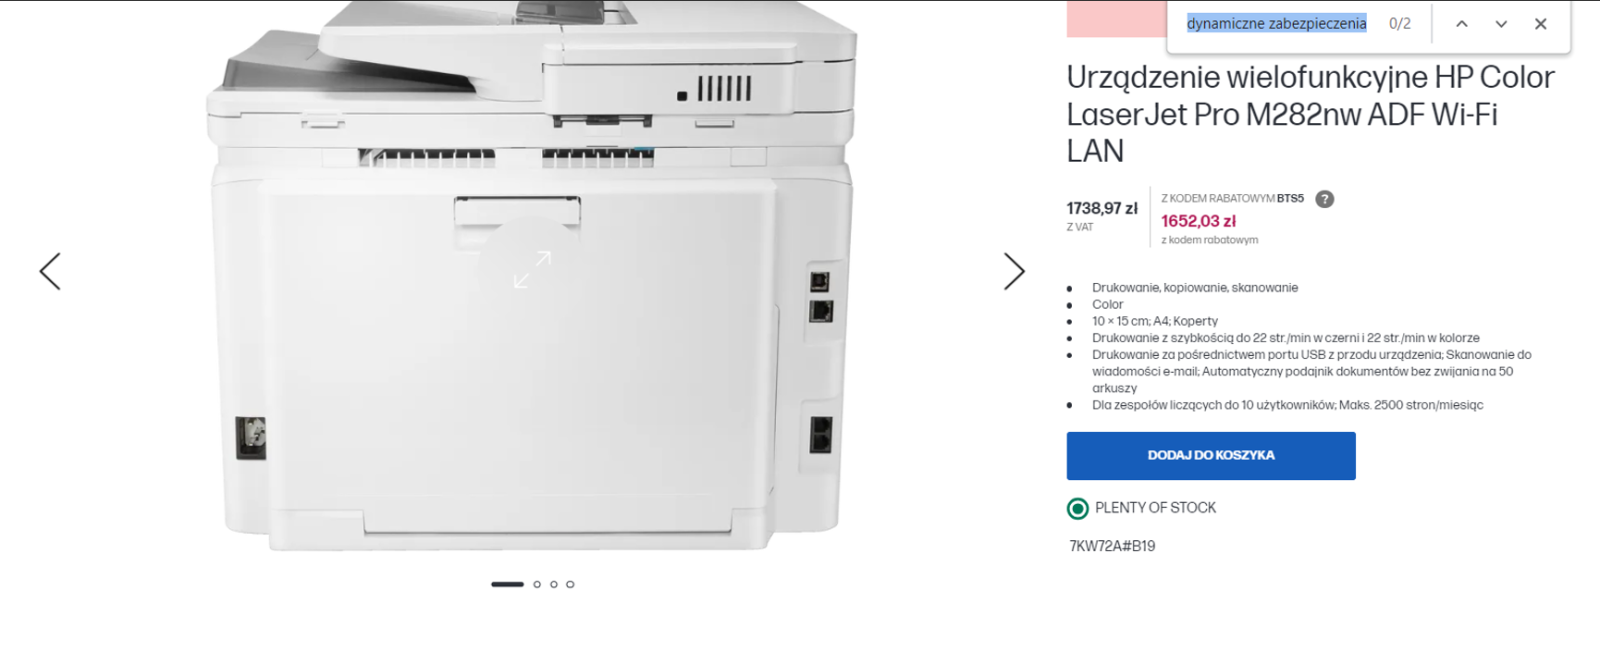 Zrzut ekranu strony produktowej drukarki HP Color LaserJet Pro M282nw z przefiltrowaną frazą „dynamiczne zabezpieczenia: 